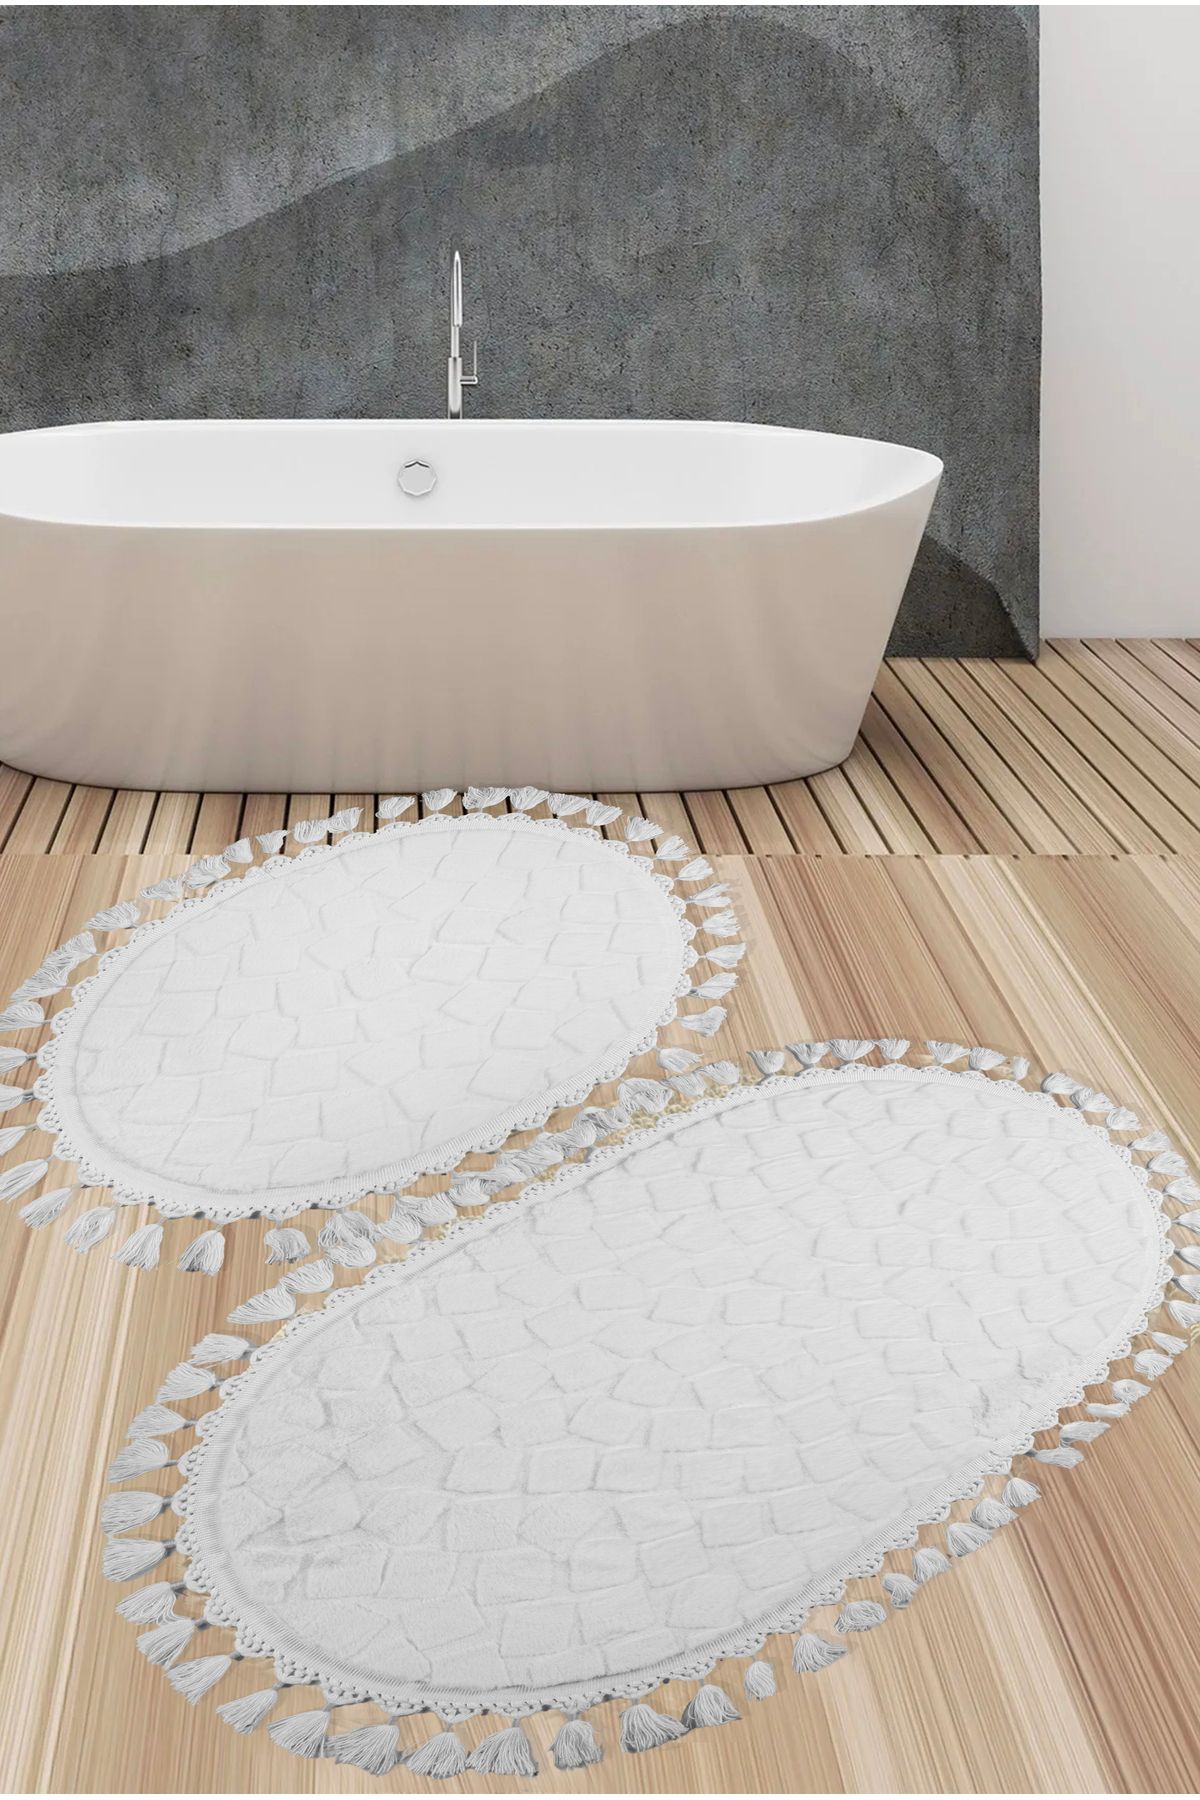 VOPTEKS Oval Peluş Banyo Paspası Yumuşak Beyaz Peluş Banyo Paspası Makinede Yıkanabilir Leke Tutmaz